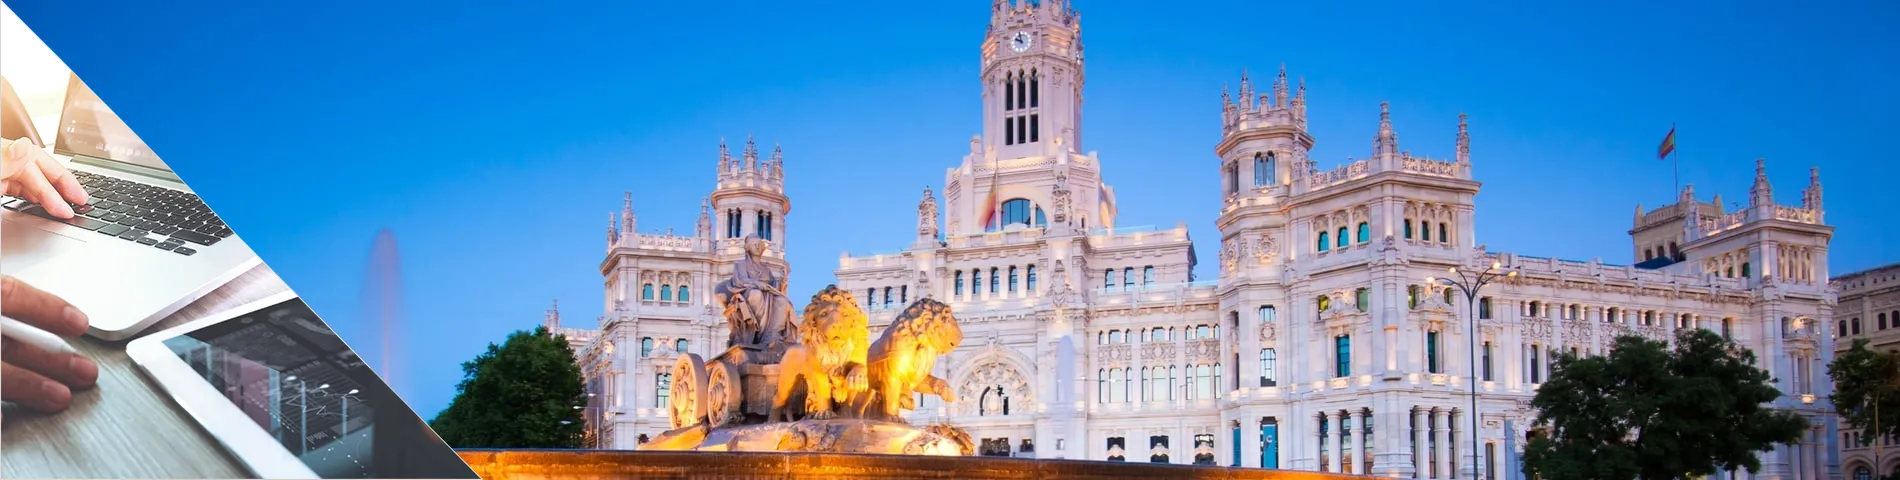 Madrid - Español y Medios digitales